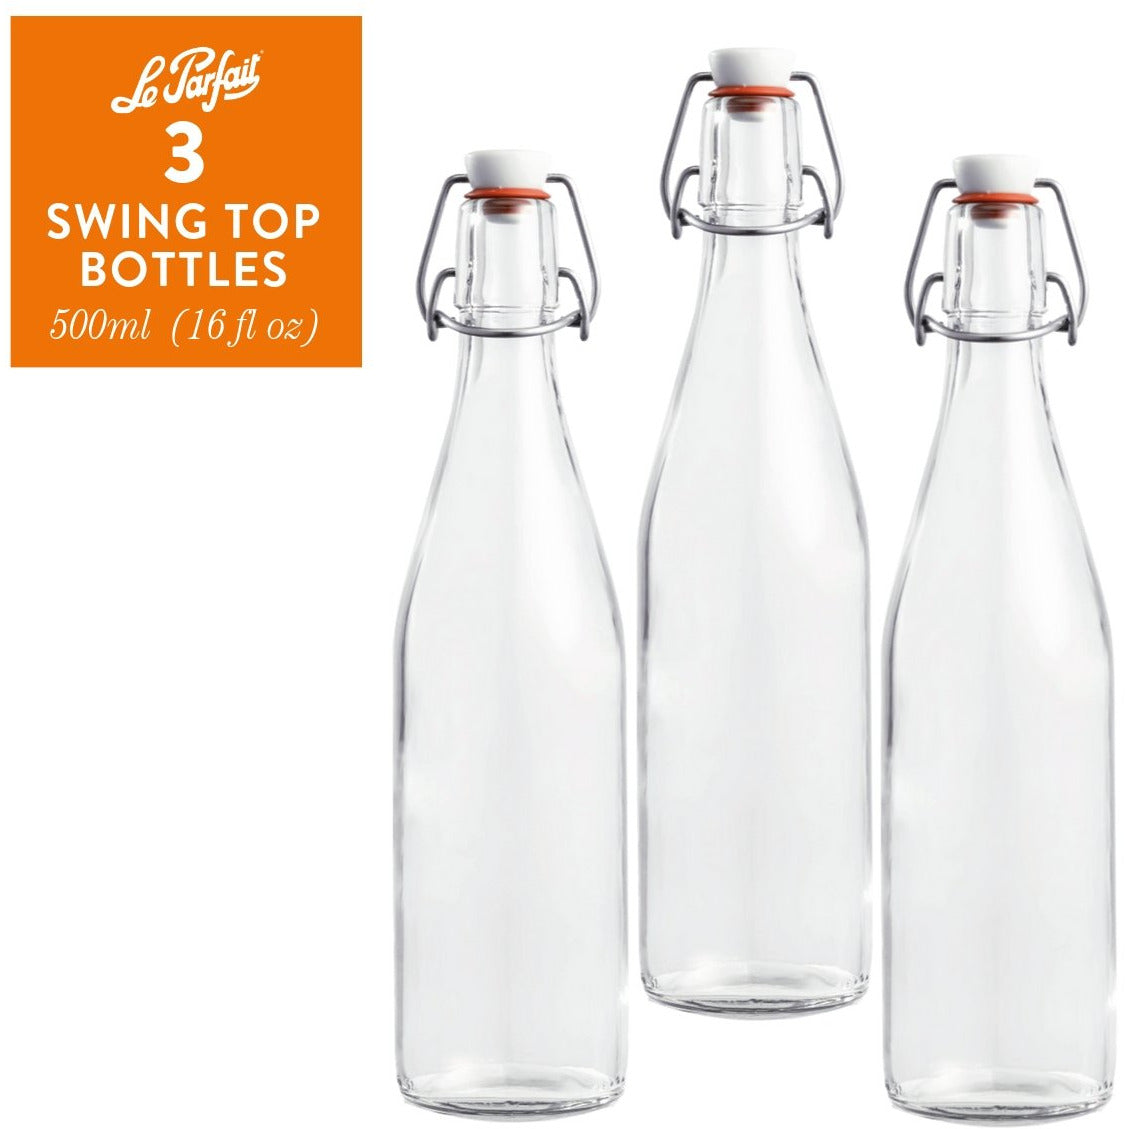 Le Parfait Bottles - Glass.com